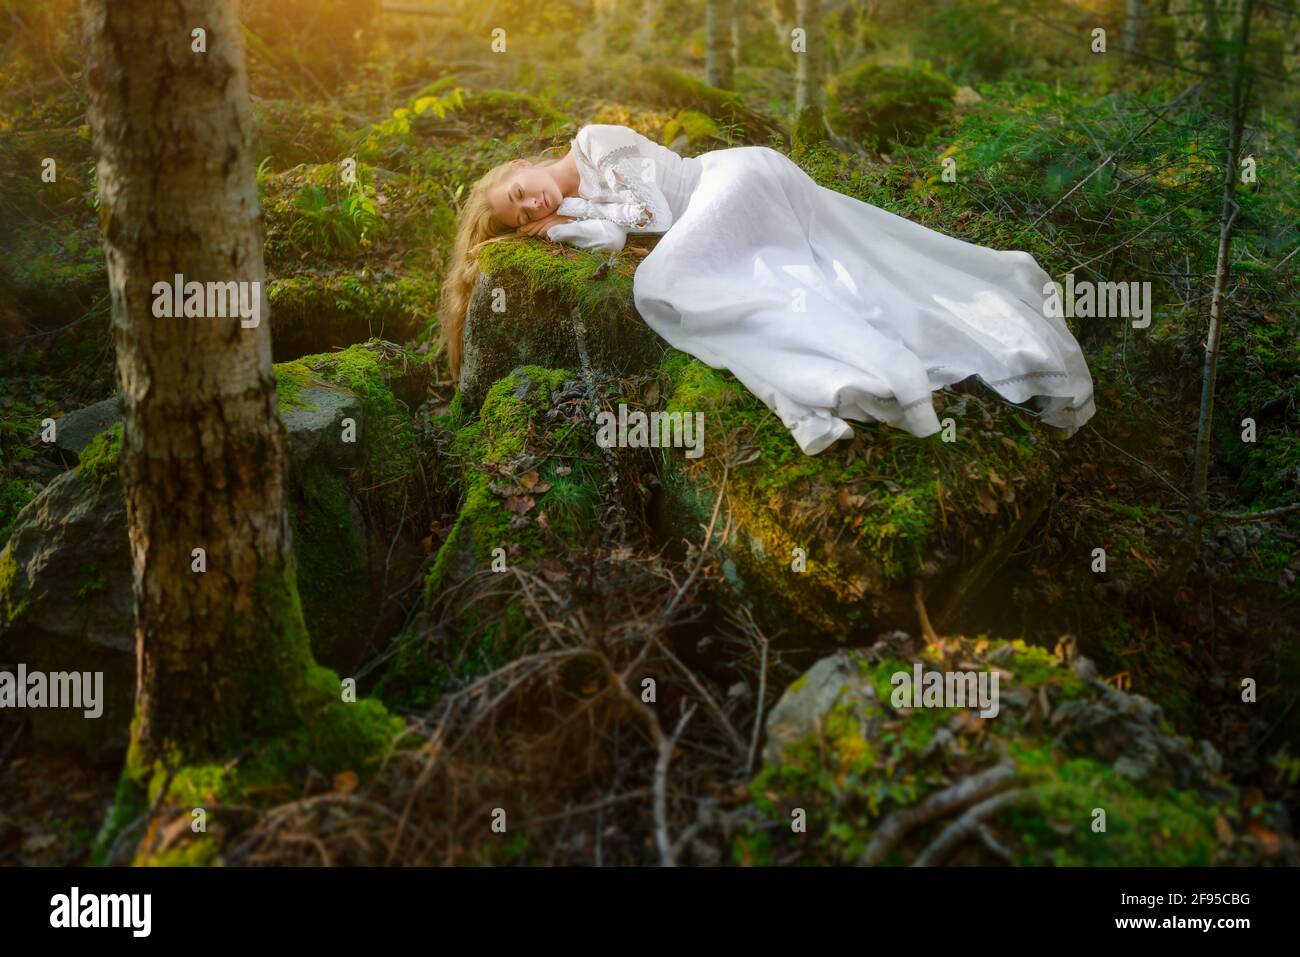 Belle jeune femme dans une robe blanche au milieu d'une forêt Banque D'Images